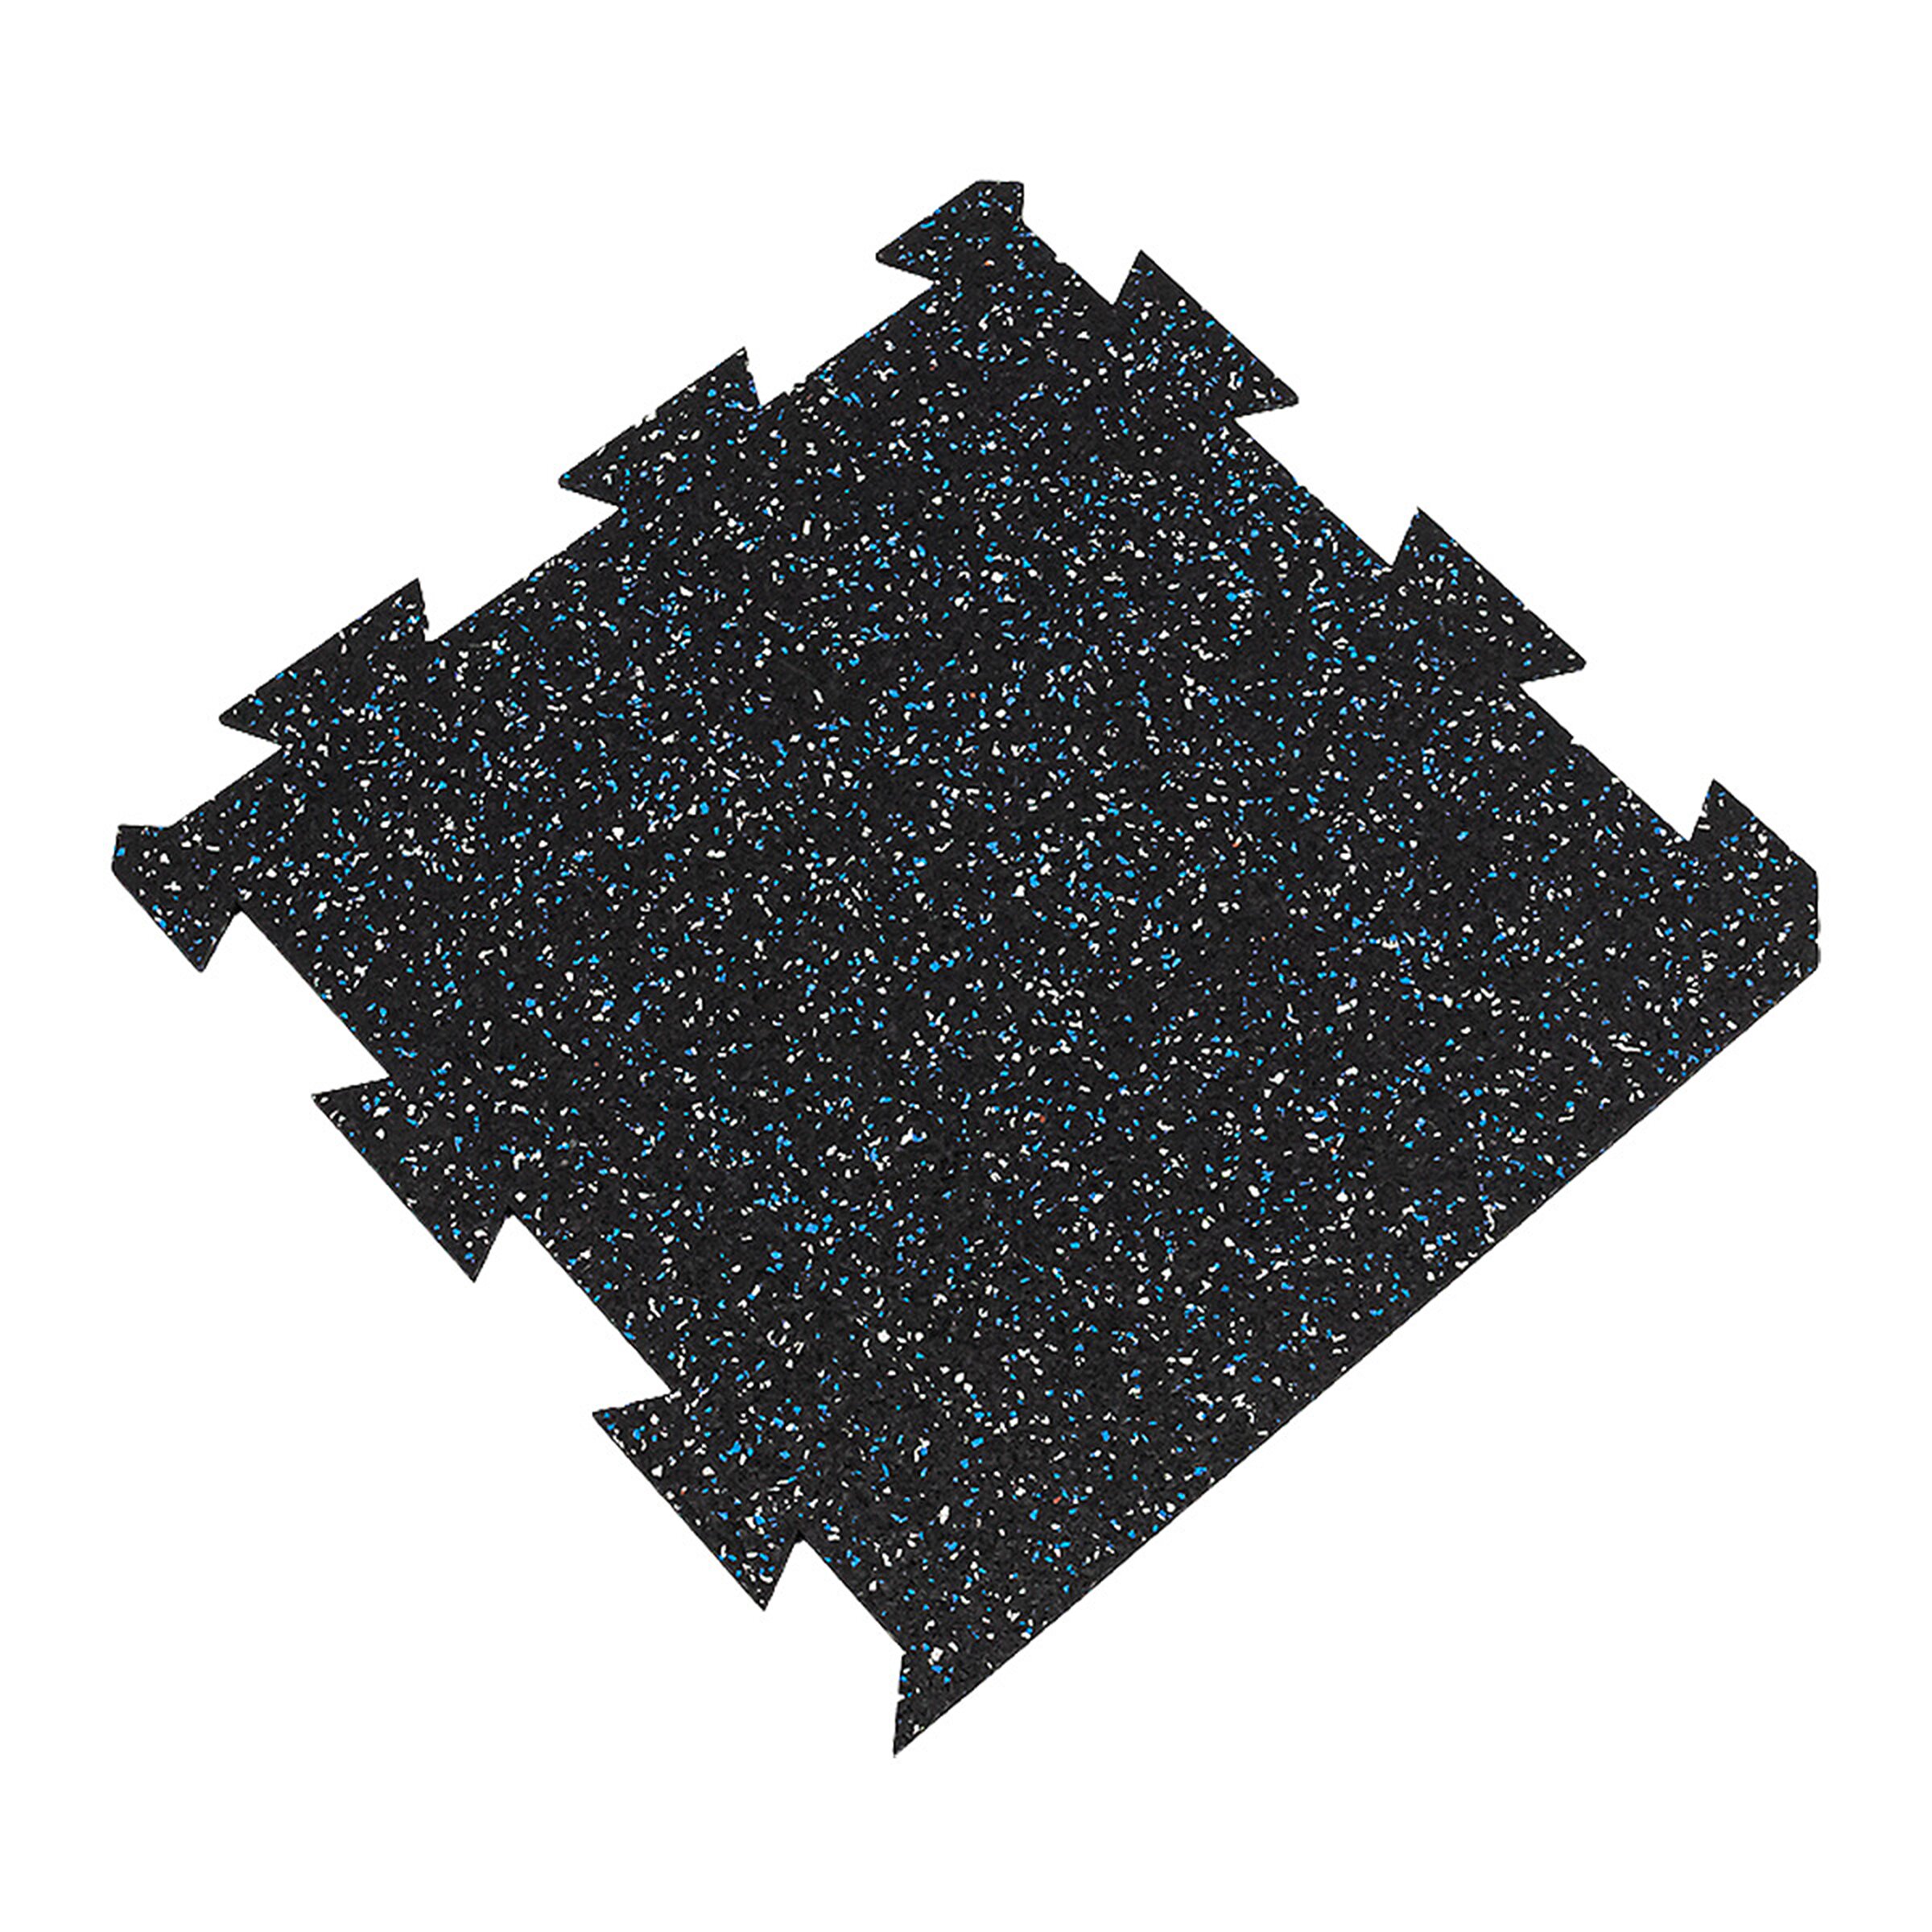 Čierno-bielo-modrá gumová modulová puzzle dlažba (okraj) FLOMA FitFlo SF1050 - dĺžka 50 cm, šírka 50 cm, výška 1,6 cm